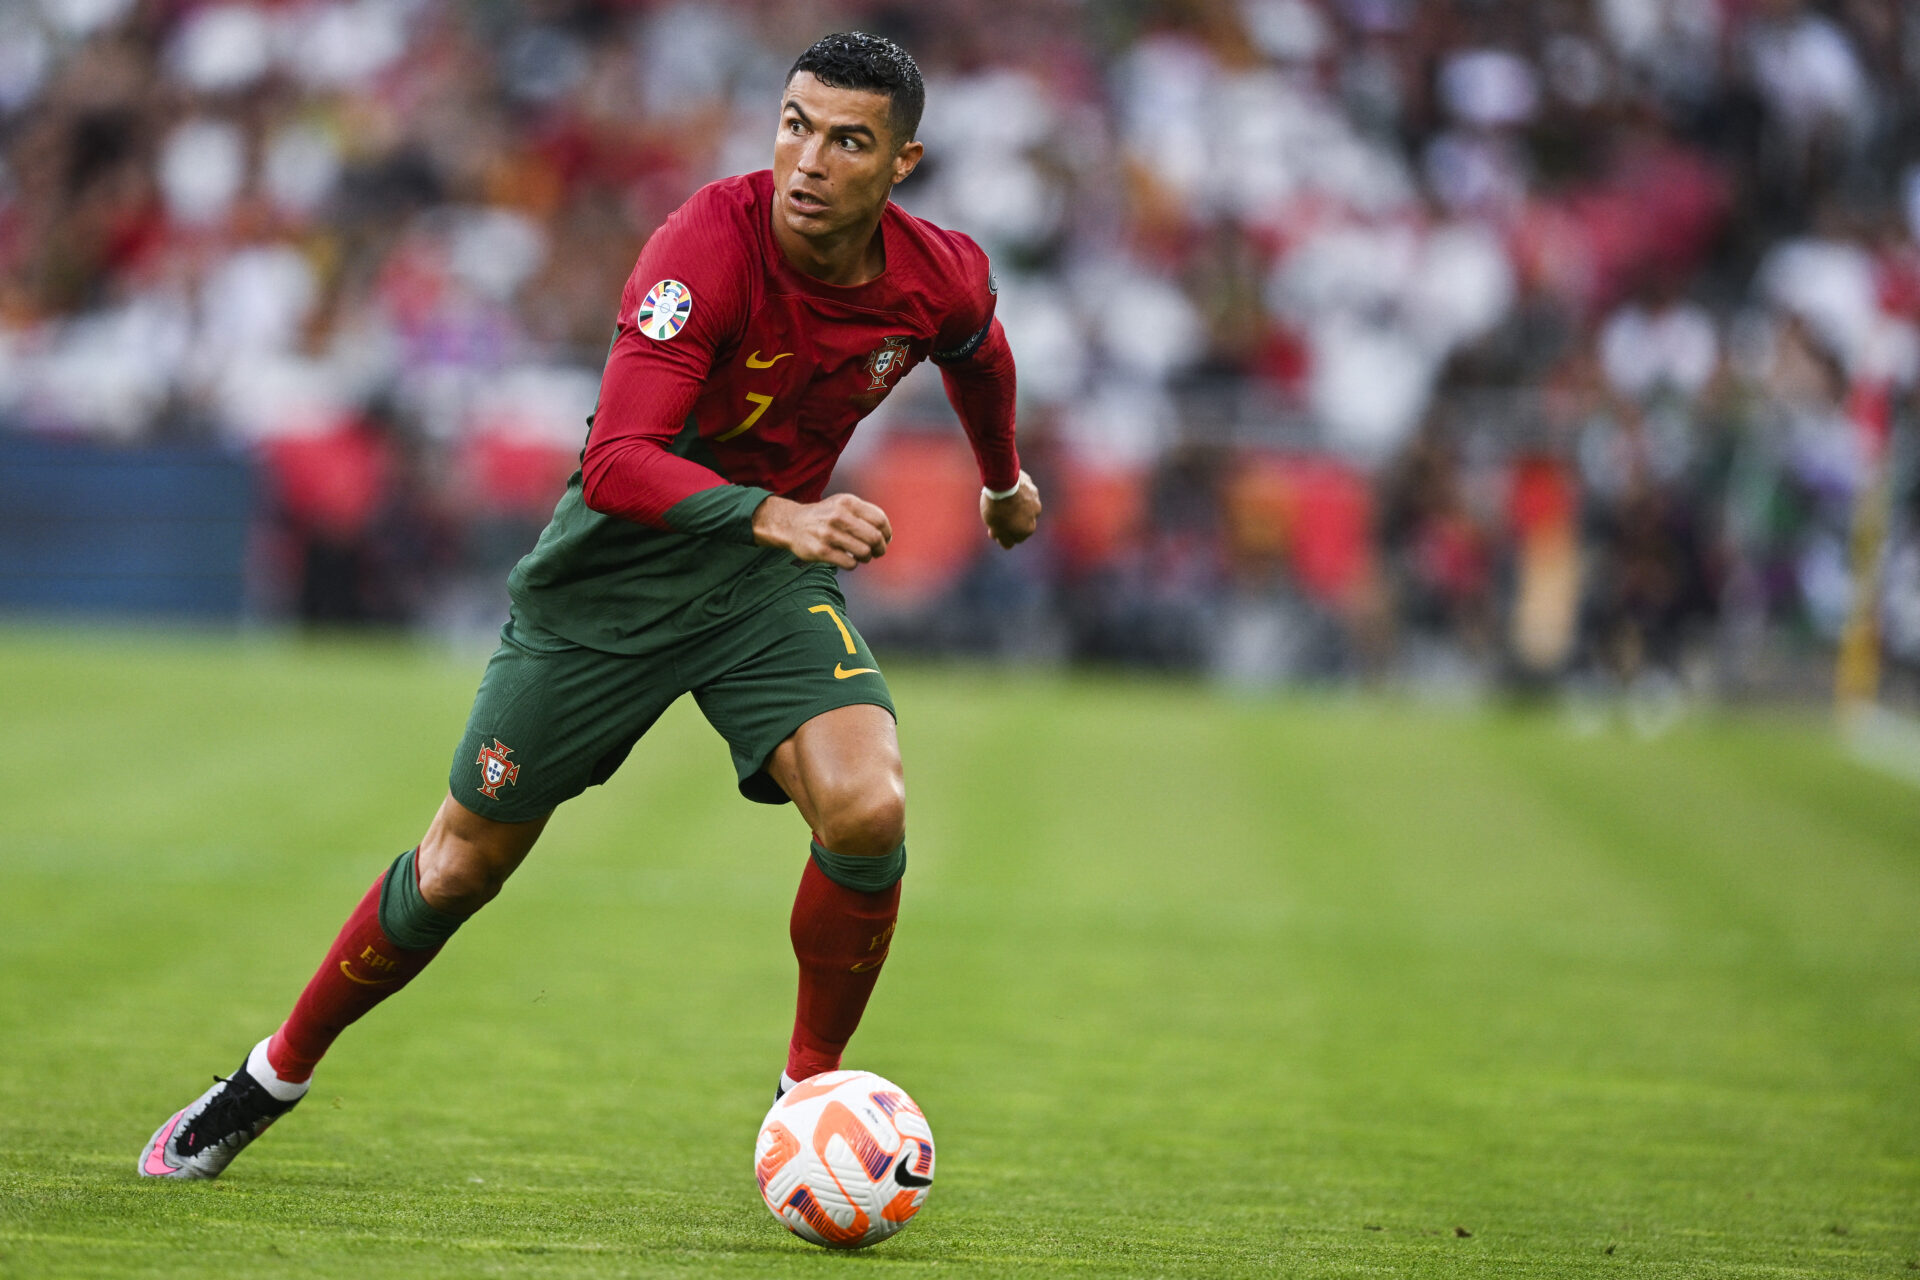 Marroquino quebrou marca de CR7 com pulo de quase 3 metros ao marcar contra  Portugal - Futebol - R7 Copa do Mundo